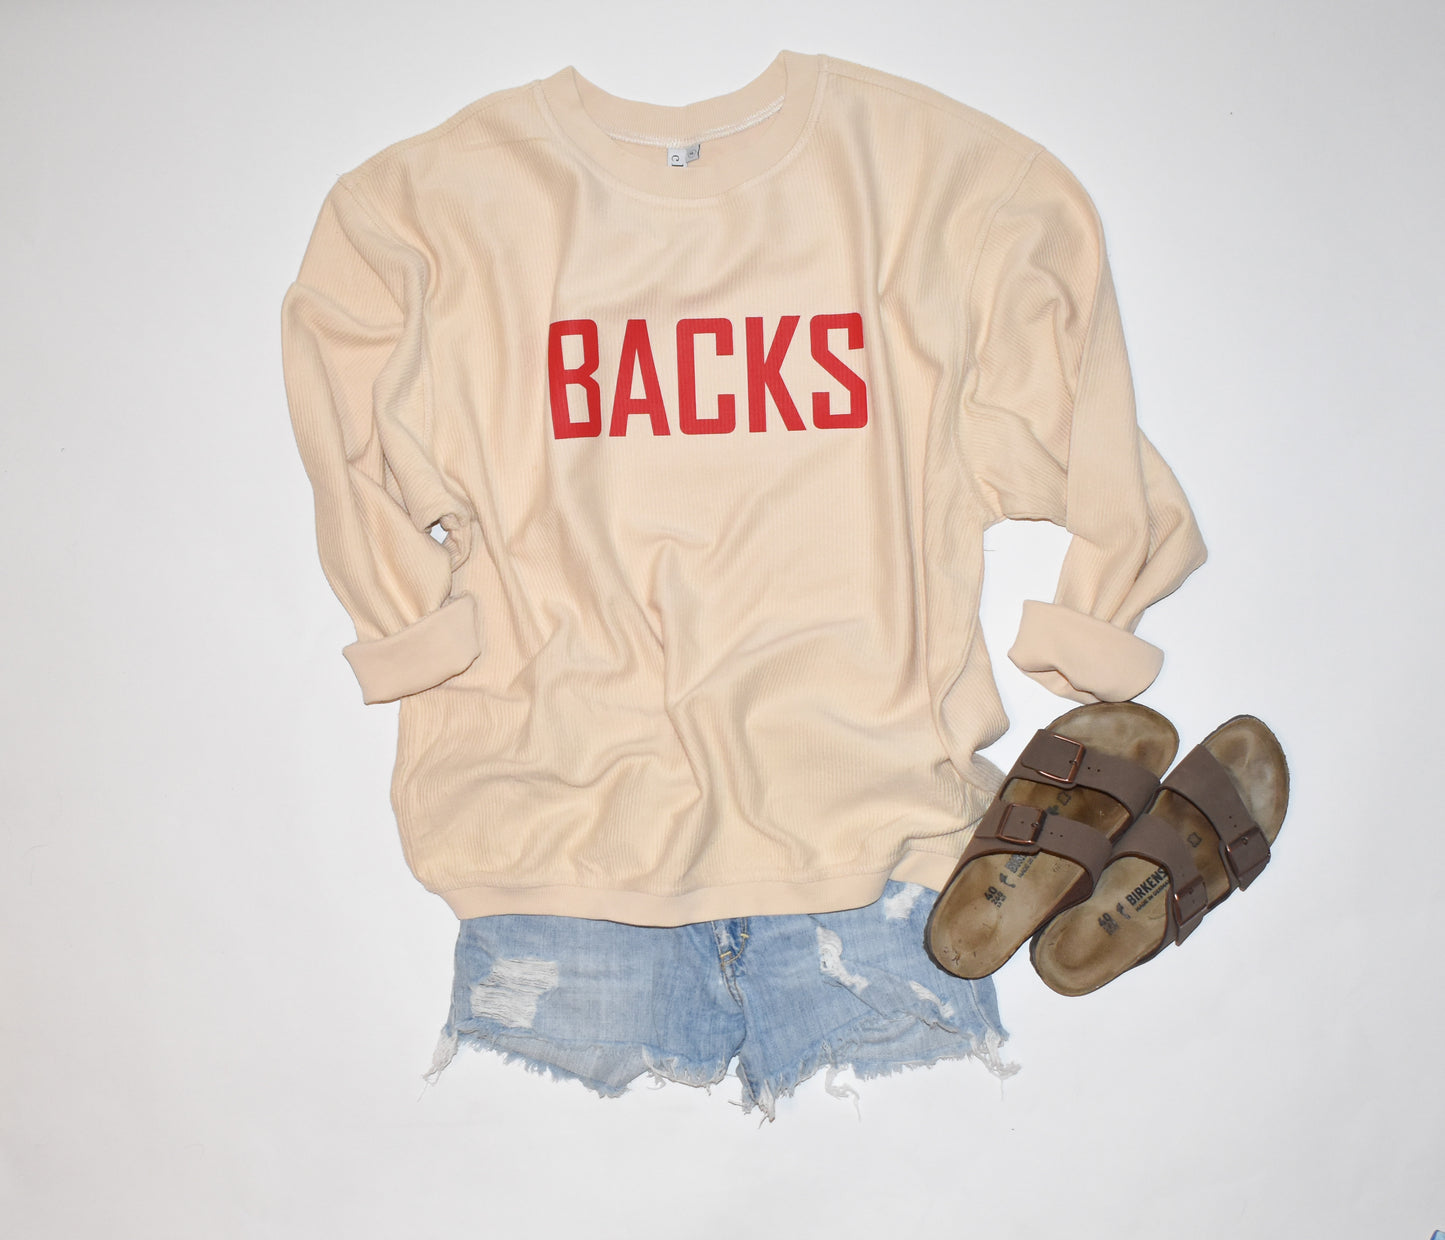 'BACKS corded sweatshirt